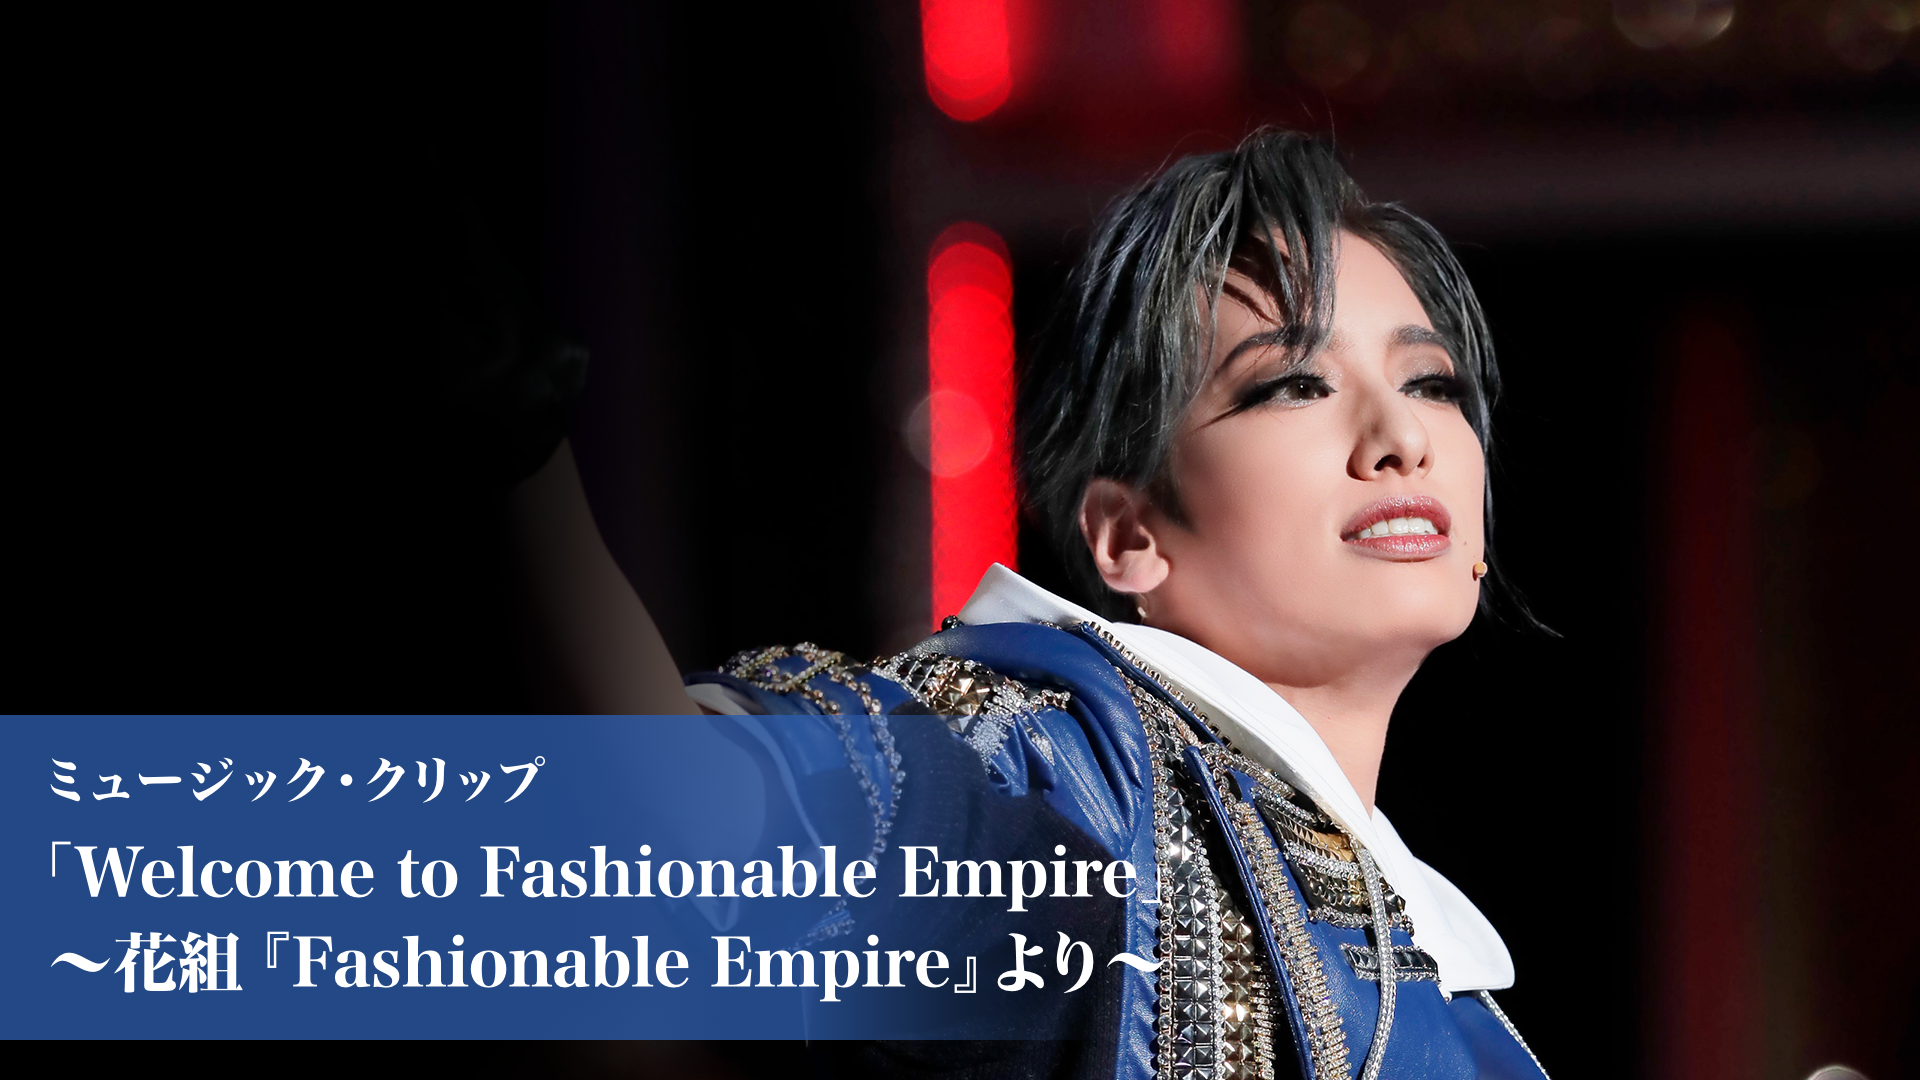 ミュージック・クリップ「Welcome to Fashionable Empire」～花組『Fashionable Empire』より～(舞台・演劇  / 2022) - 動画配信 | U-NEXT 31日間無料トライアル